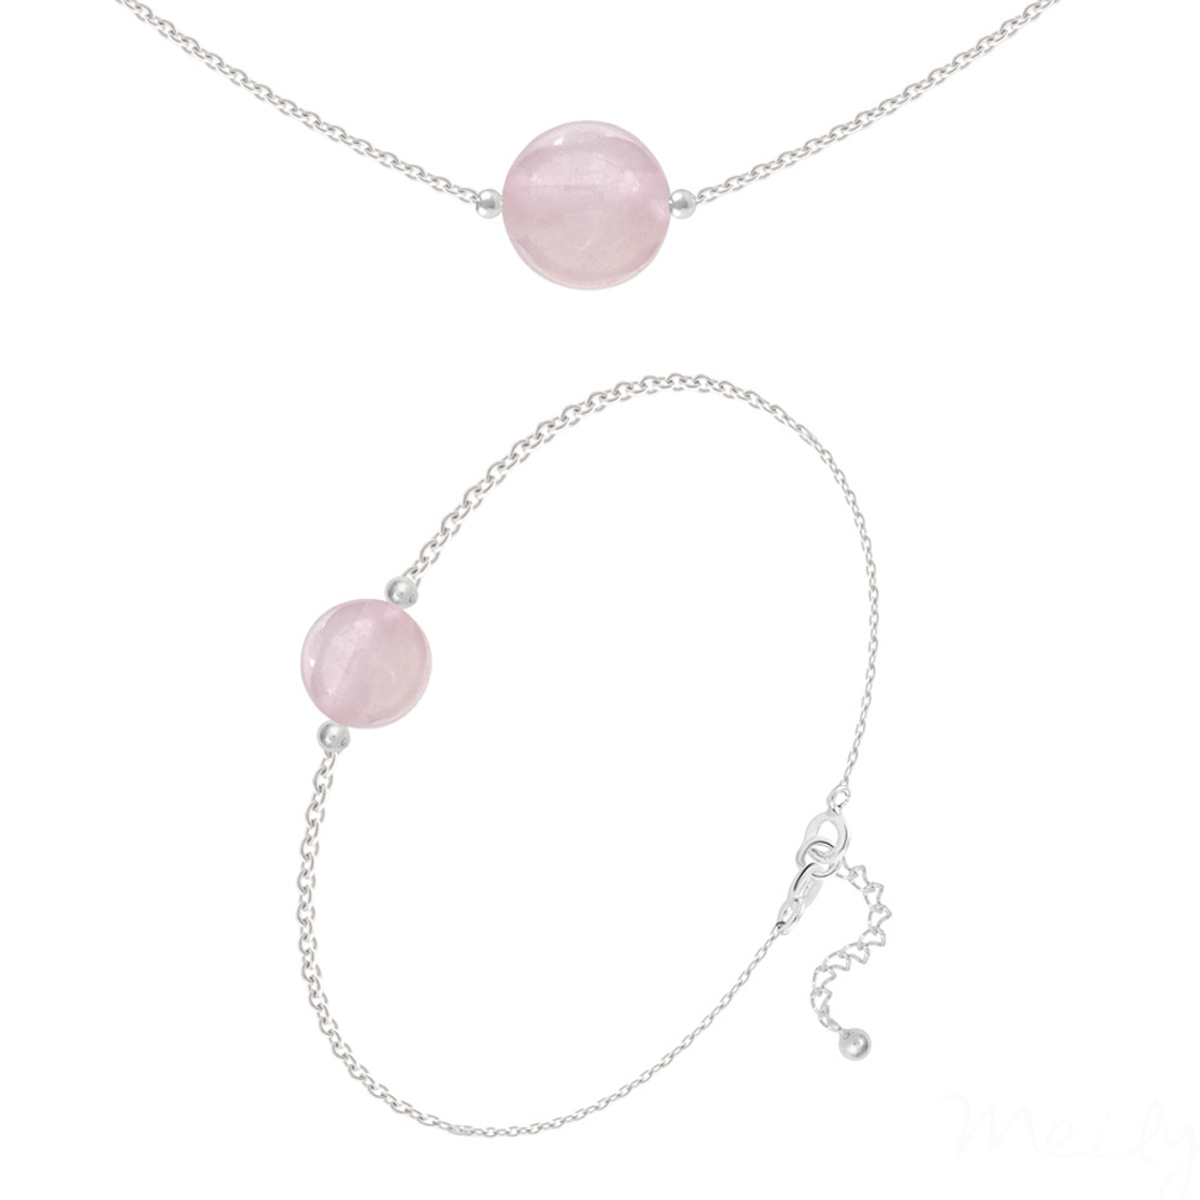 Parure argent artisanal \'Mineralia\' quartz rose argenté - 10 et 8 mm (collier & bracelet) - [R5983]